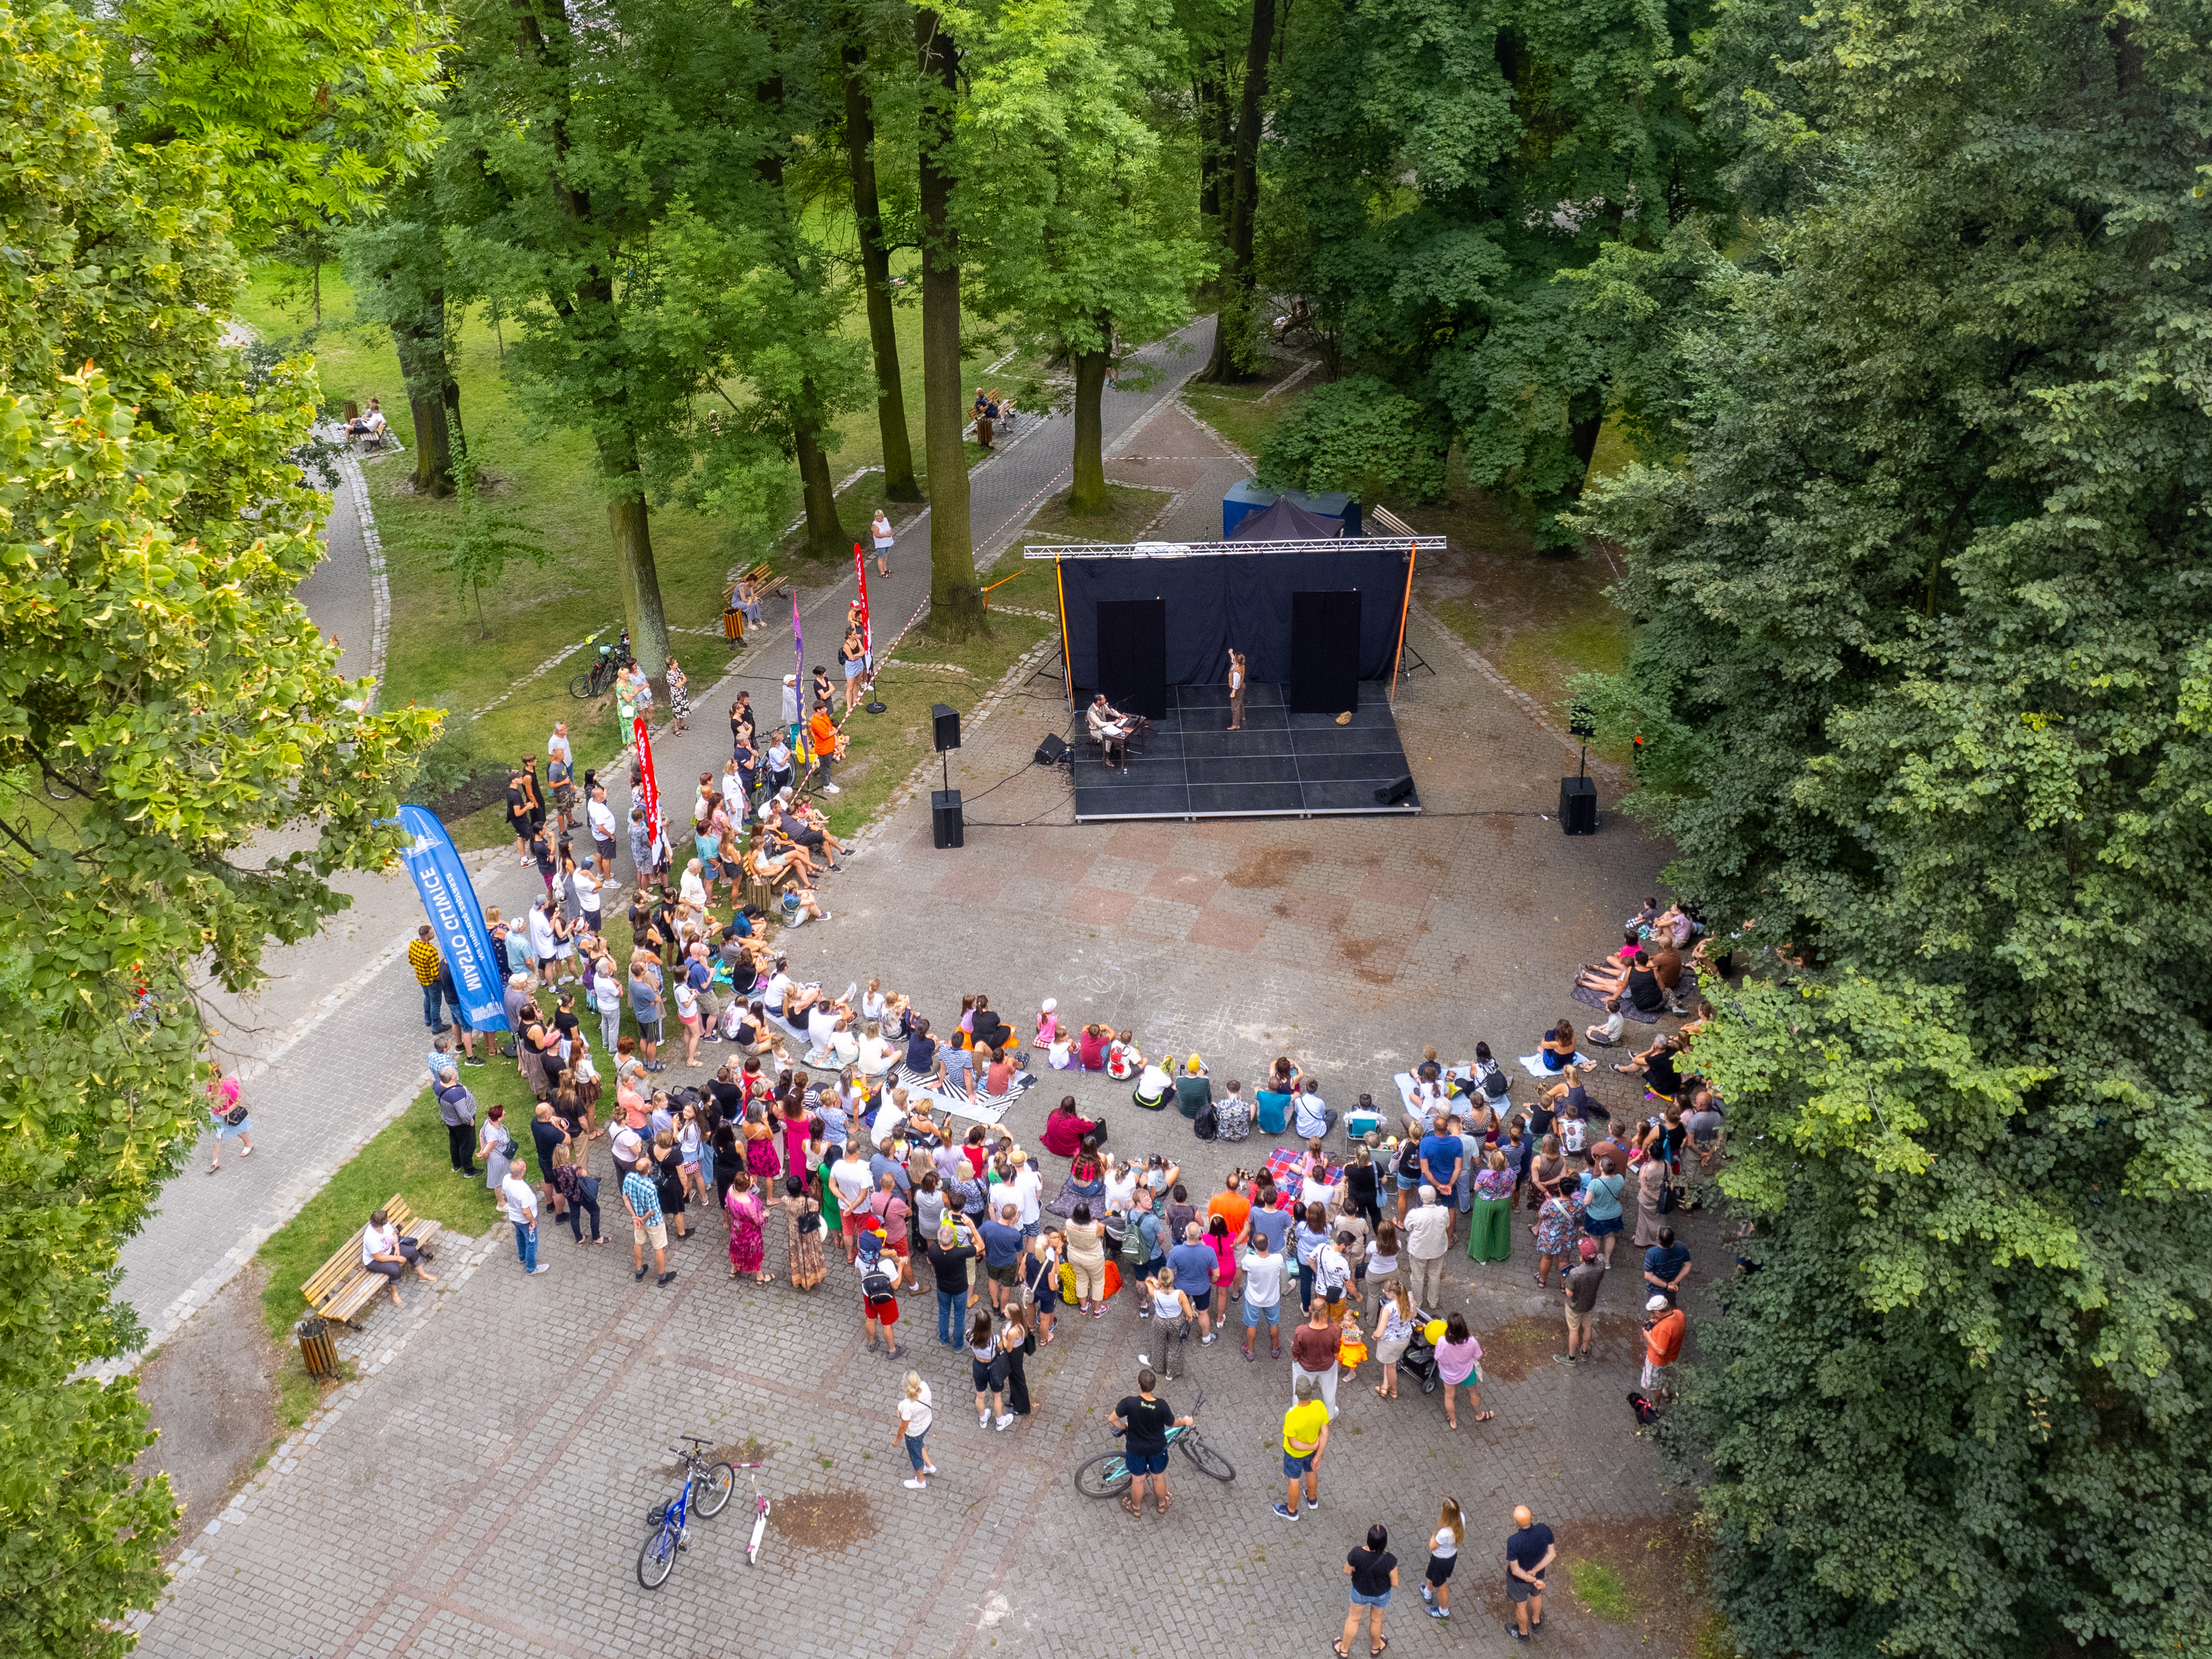 Plenerowa scena w parku i publiczność, zdjęcie z góry